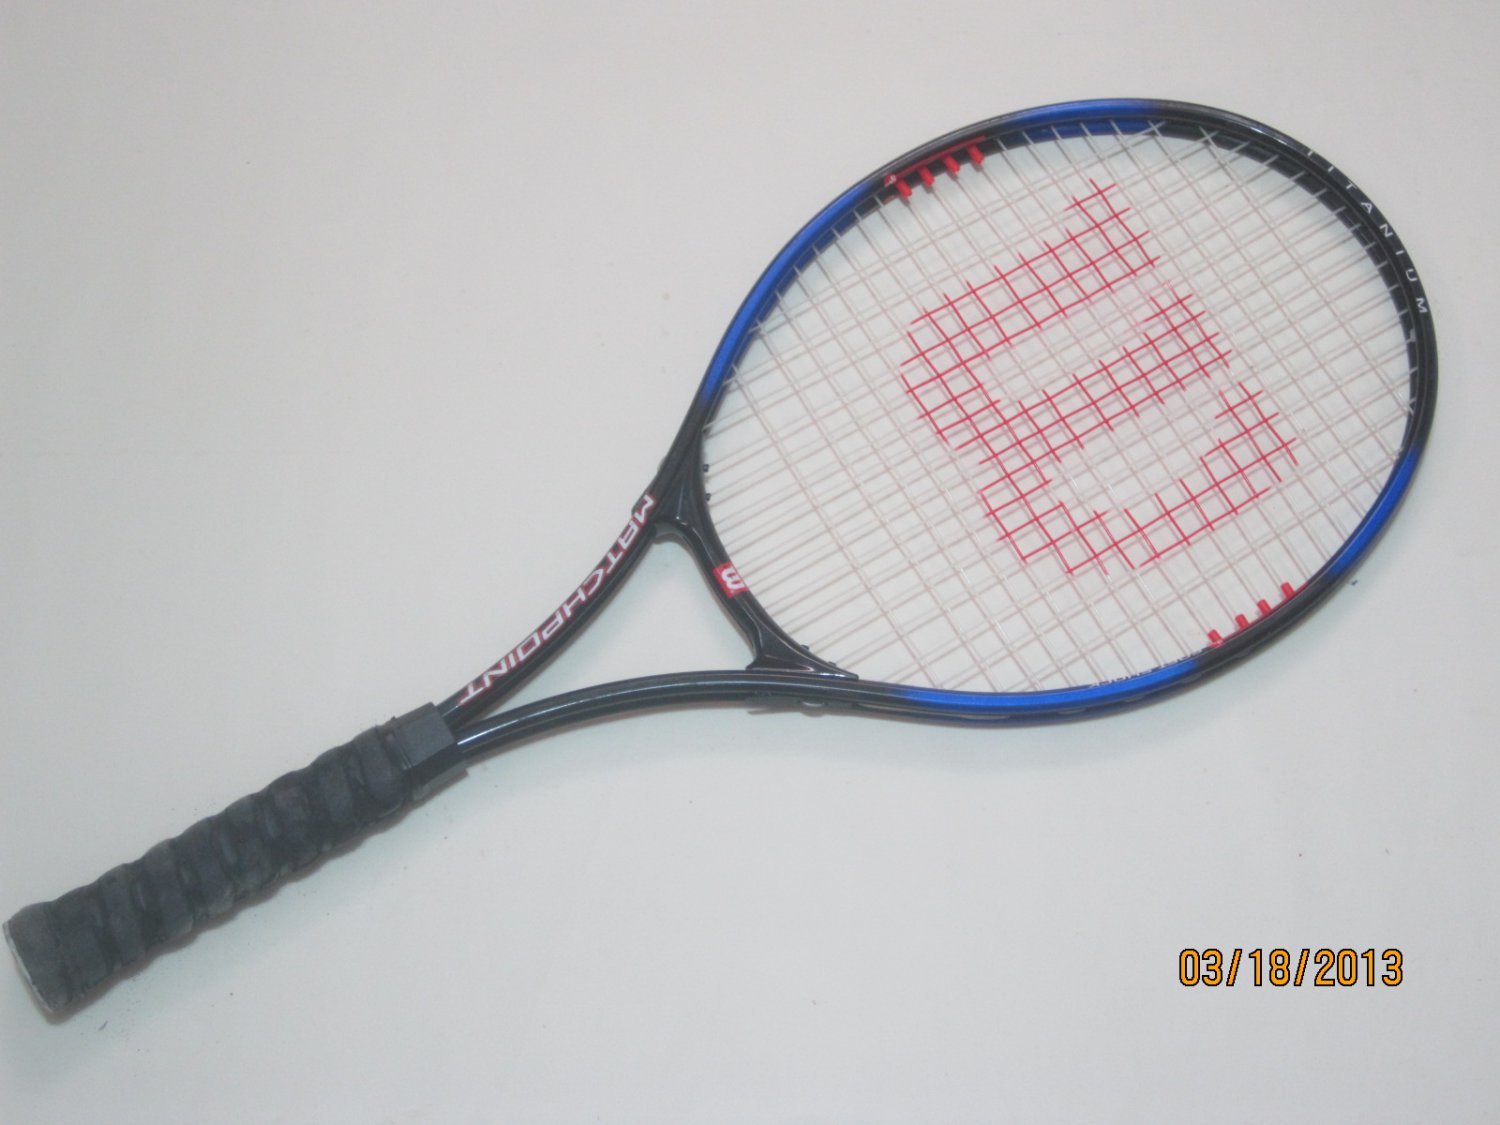 Wilson Matchpoint Titanium Tennis Racquet (SN WIG65)